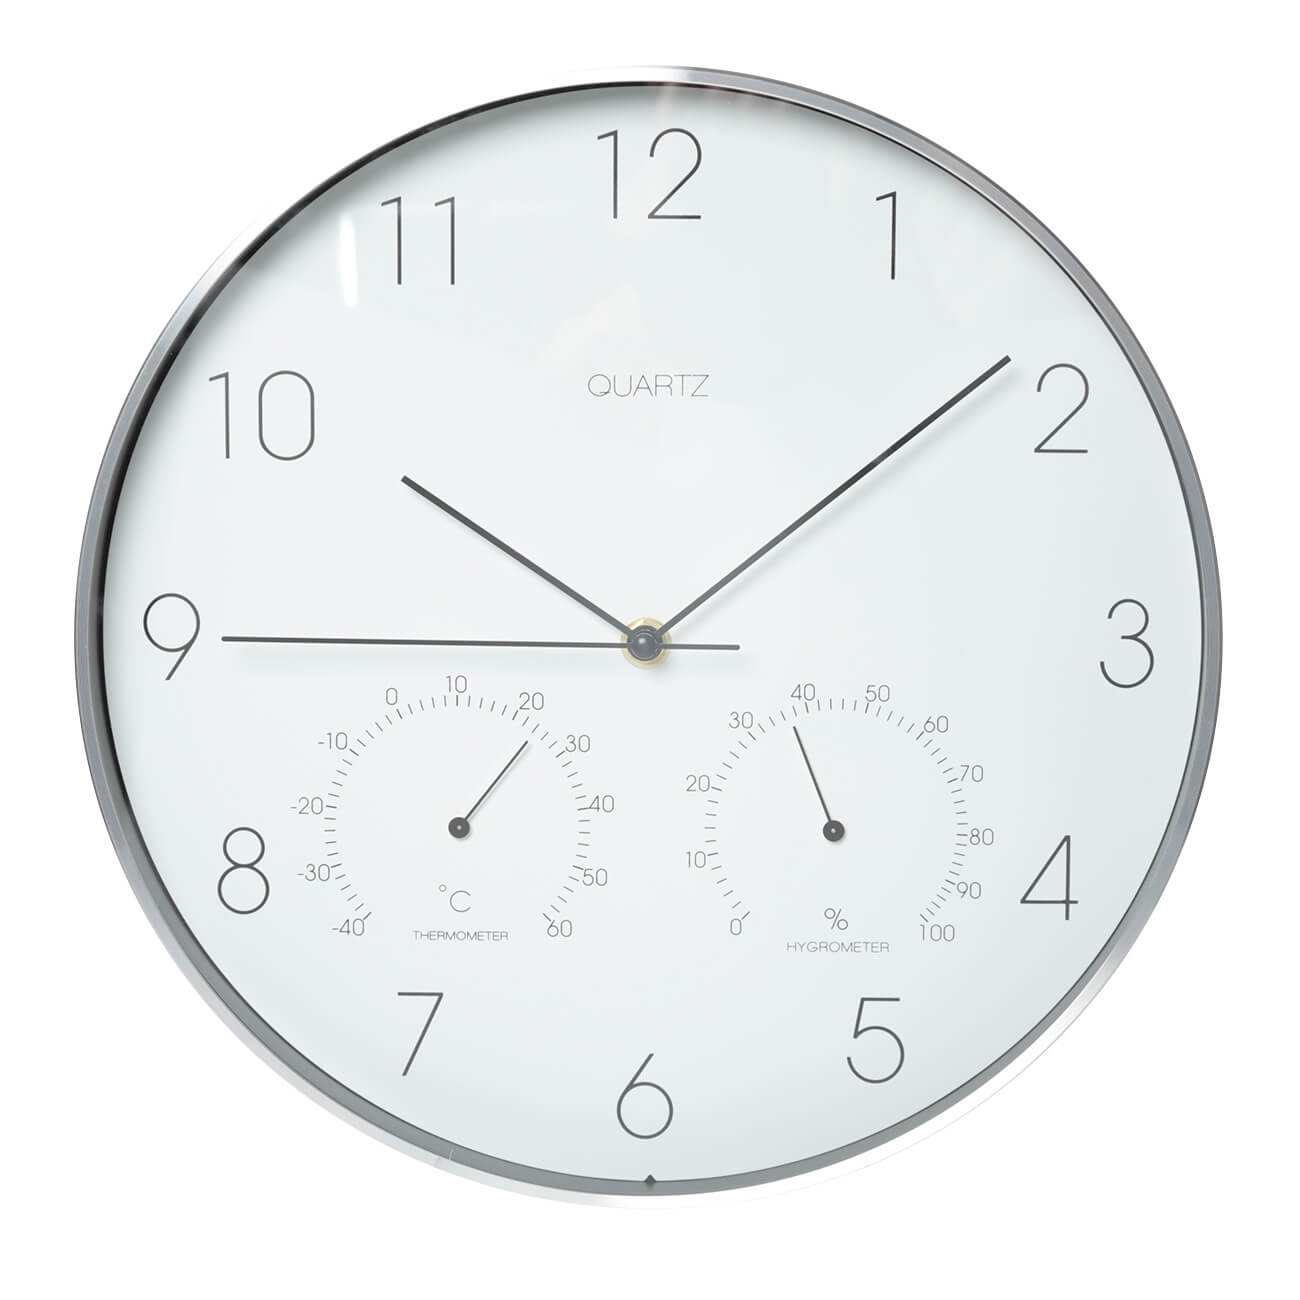 Часы настенные, 31 см, с термометром и гигрометром, пластик/стекло, круглые, белые, Dial часы будильник 13 см на ножках металл круглые бежевые ретро dial